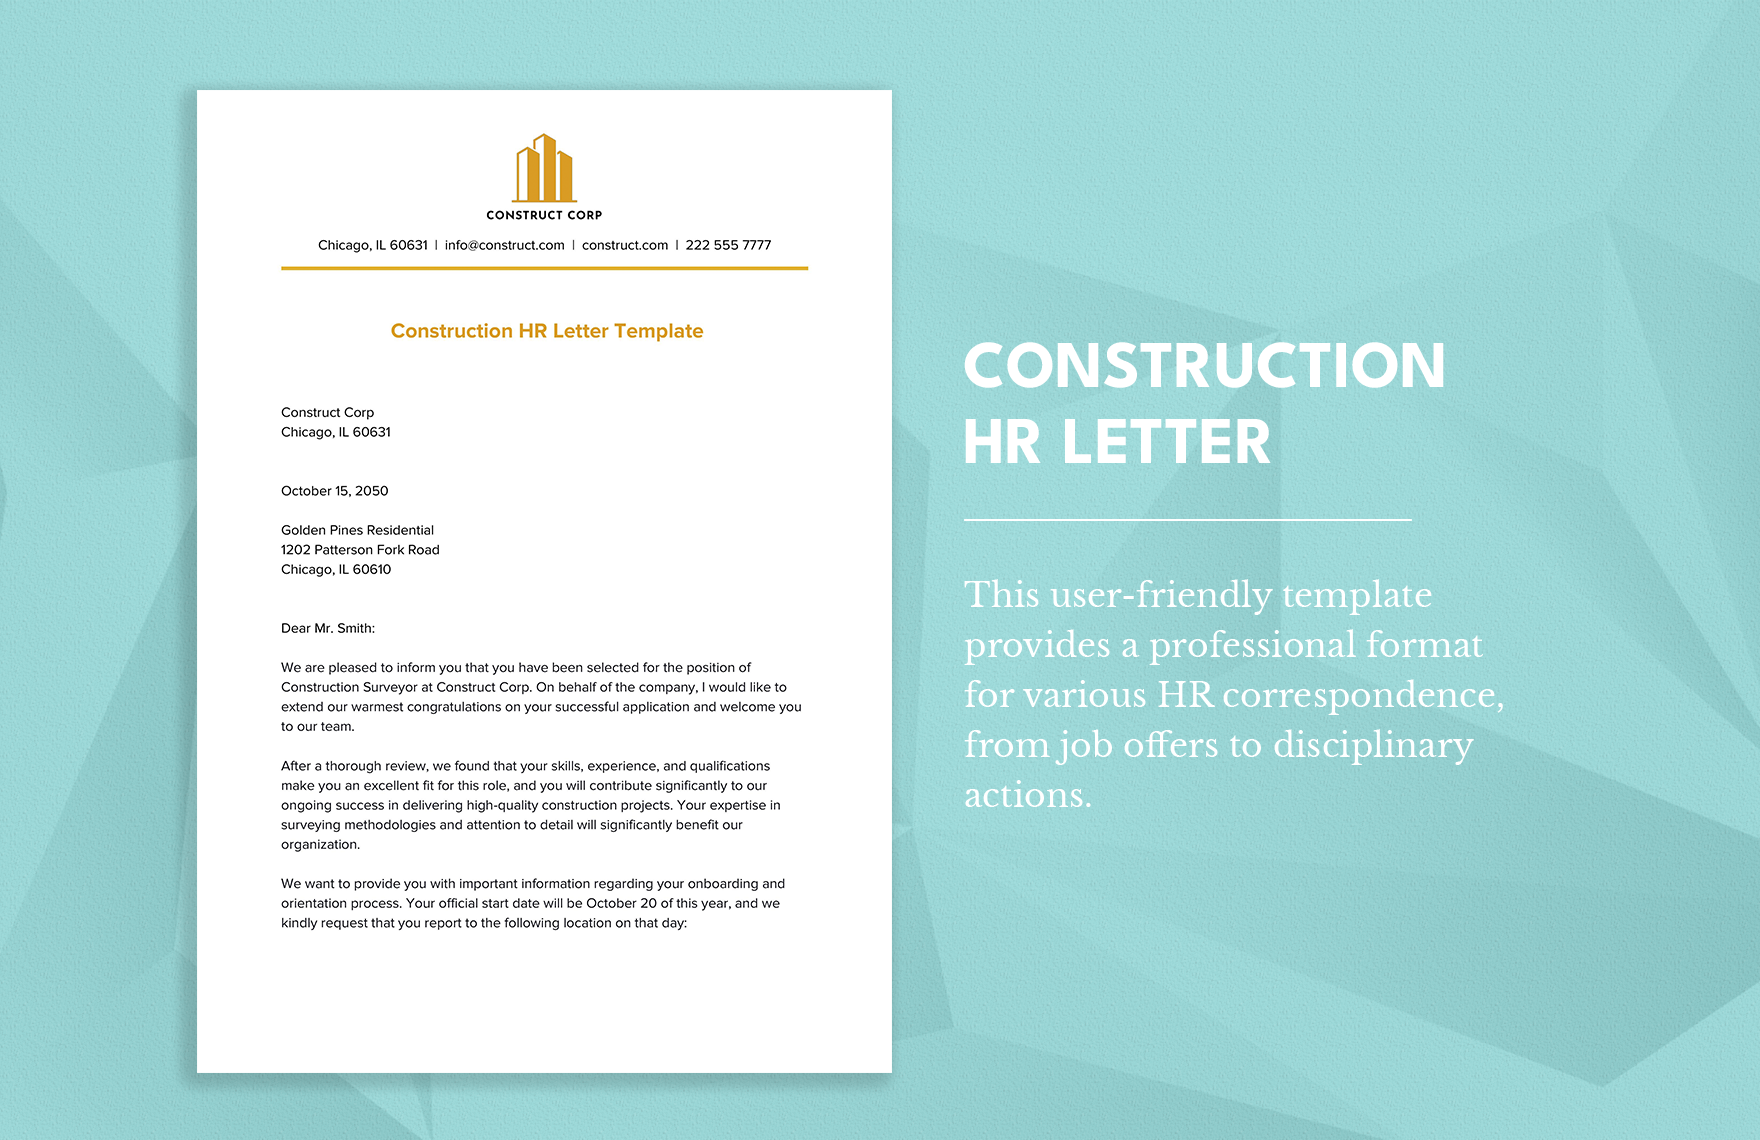 Construction HR Letter